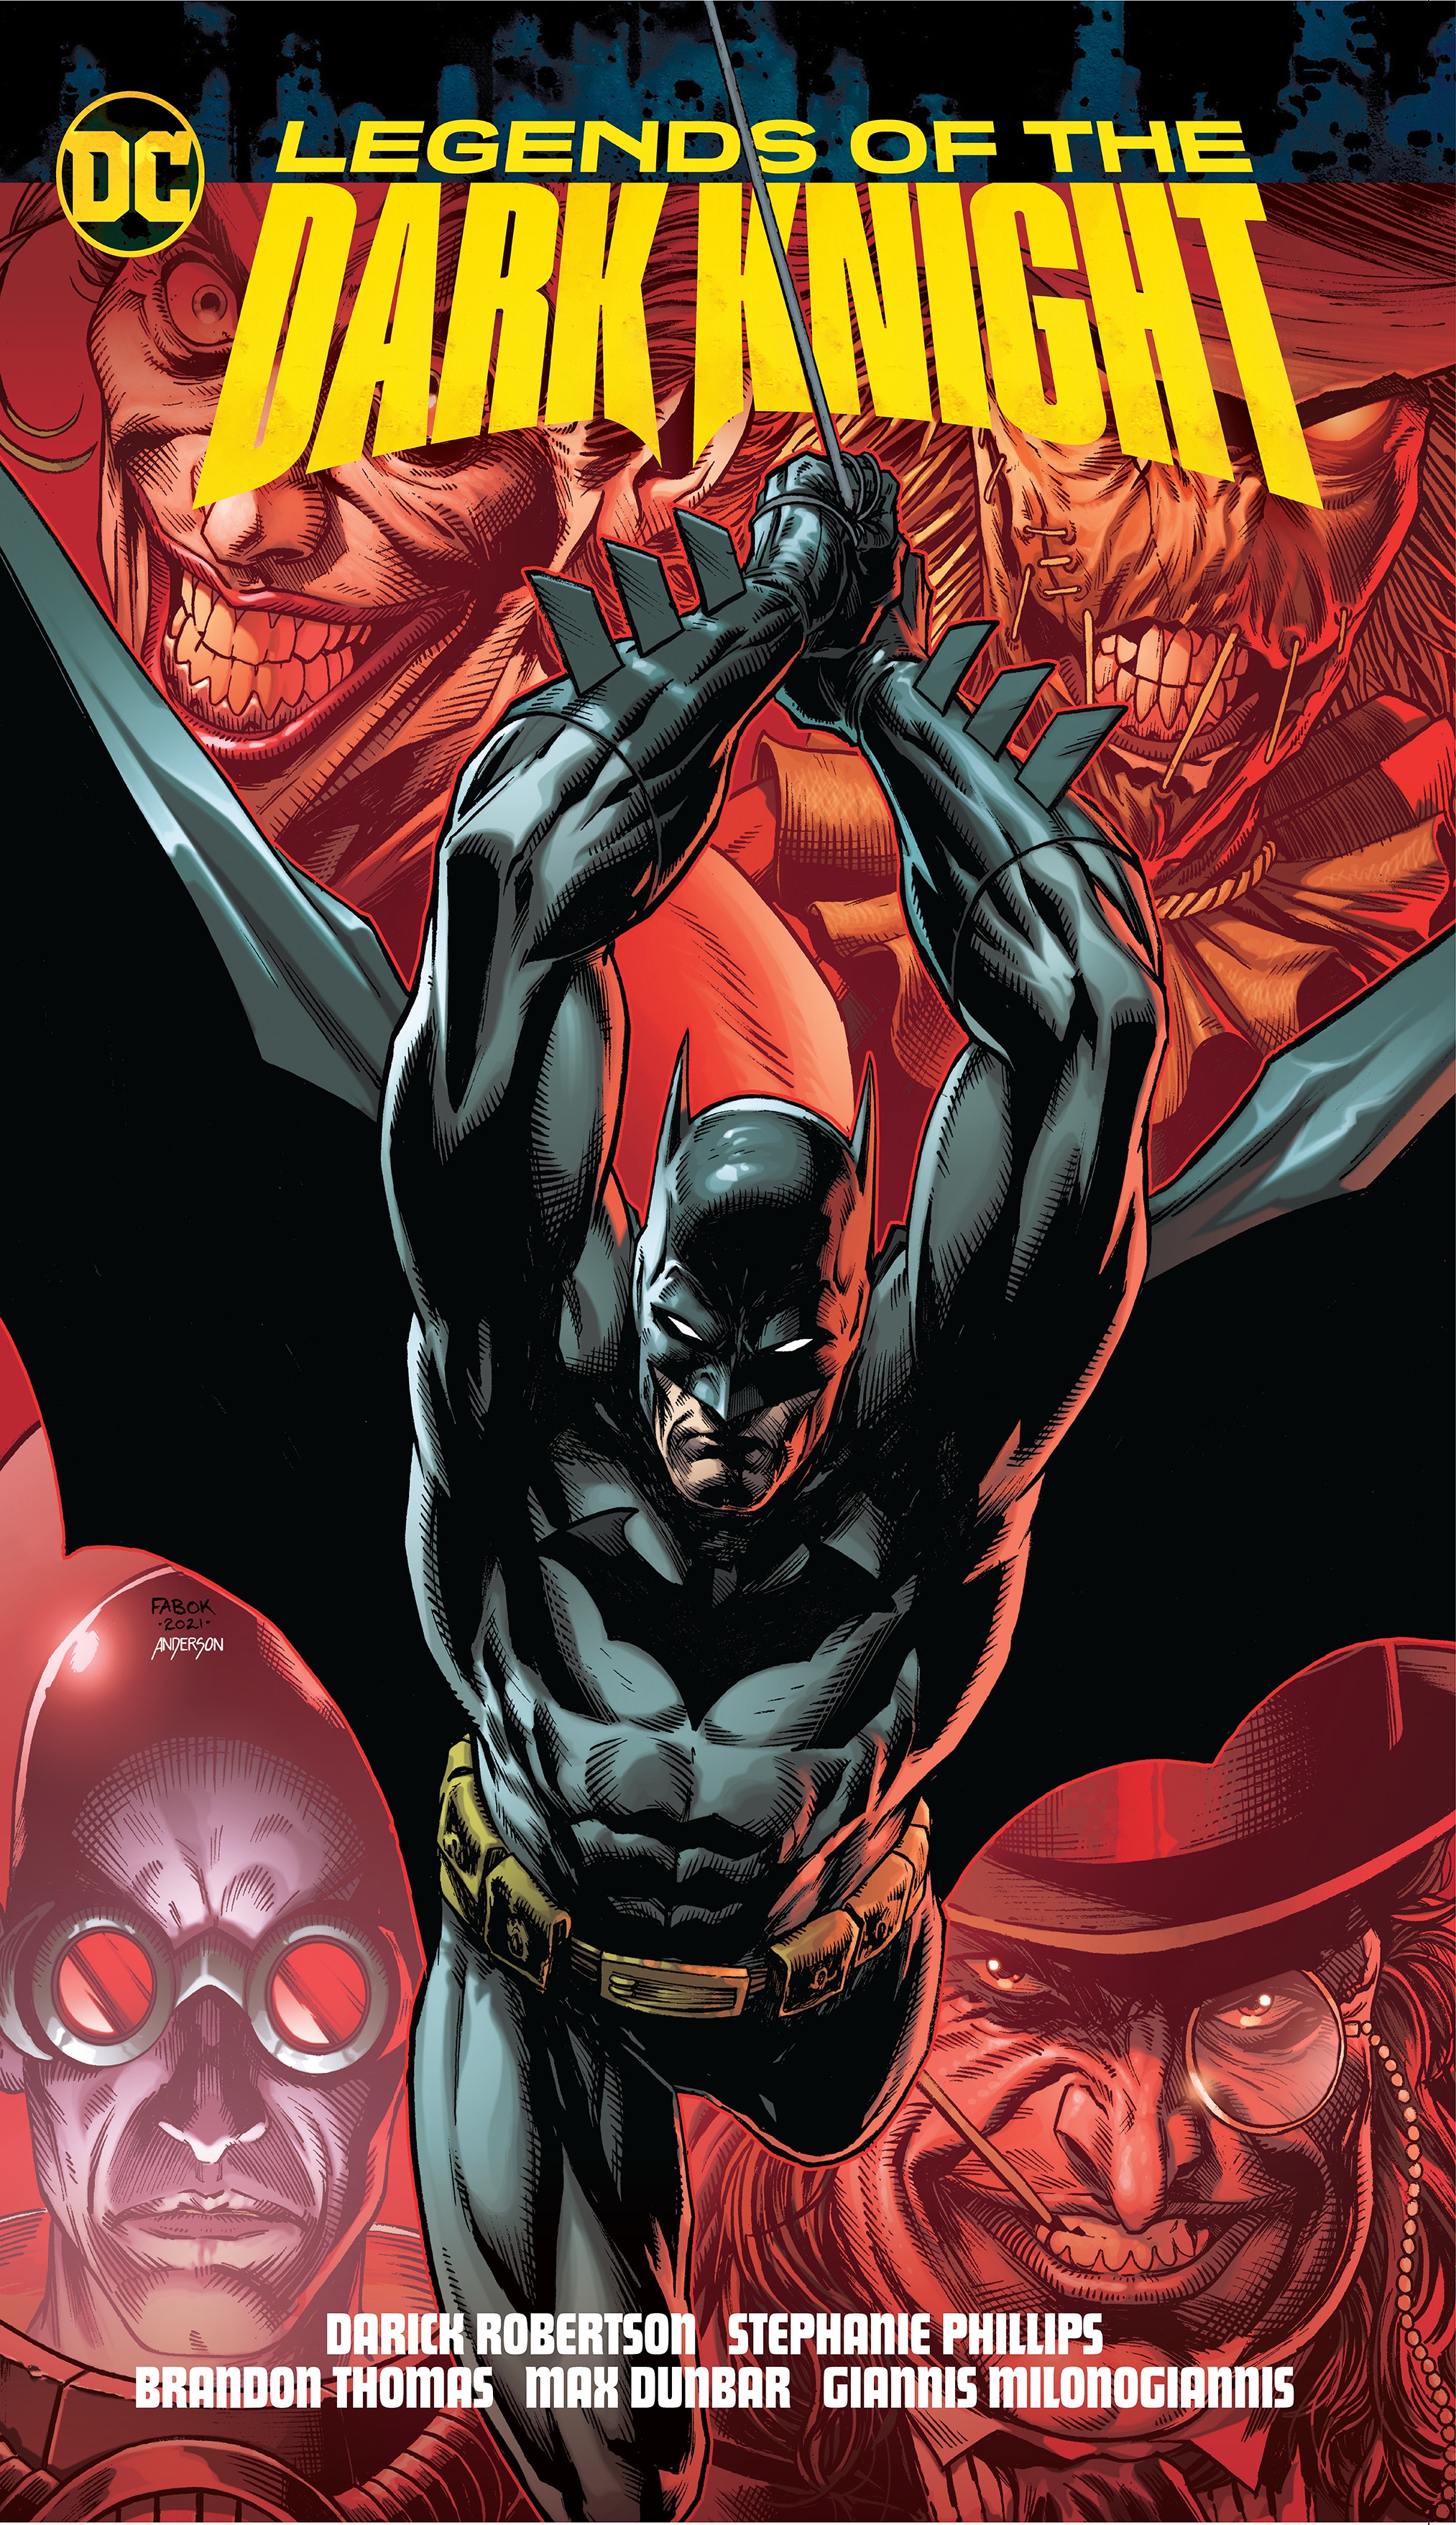 batman dark knight comic new 52